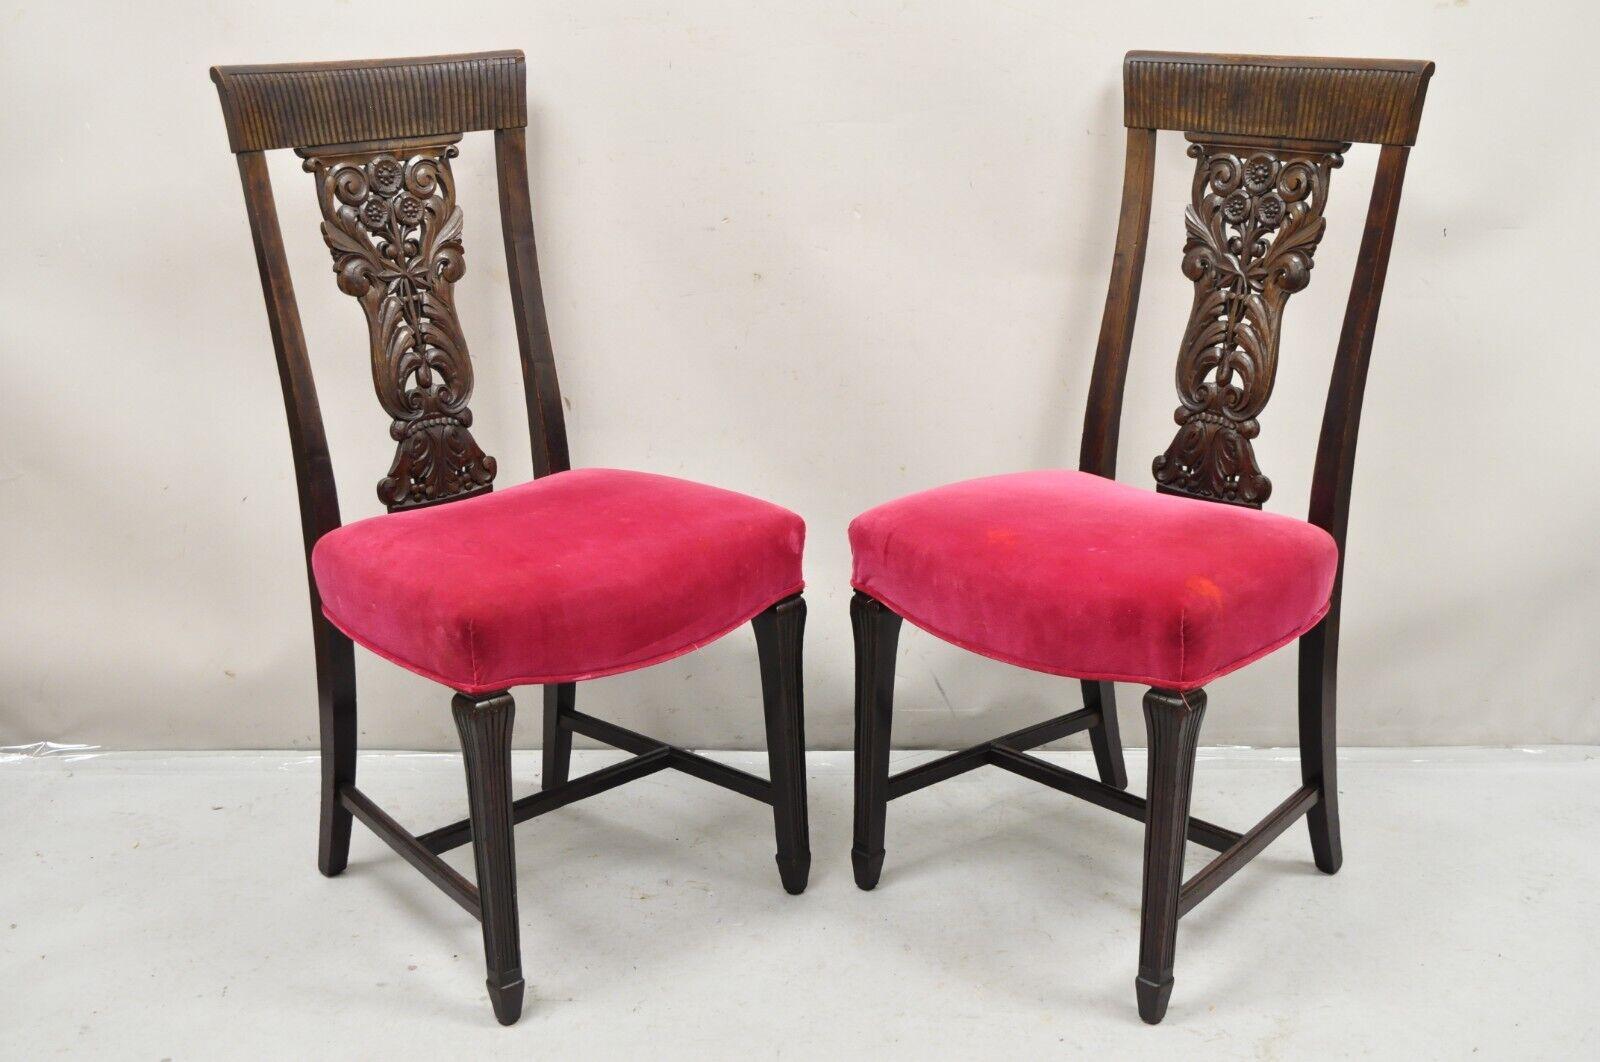 Chaises de salle à manger anciennes en acajou rouge mohair, sculptées de motifs floraux - Lot de 4. L'article présente des cadres en bois massif, des motifs floraux sculptés à l'avant et à l'arrière, une base à châssis. Circa  Début des années 1900.